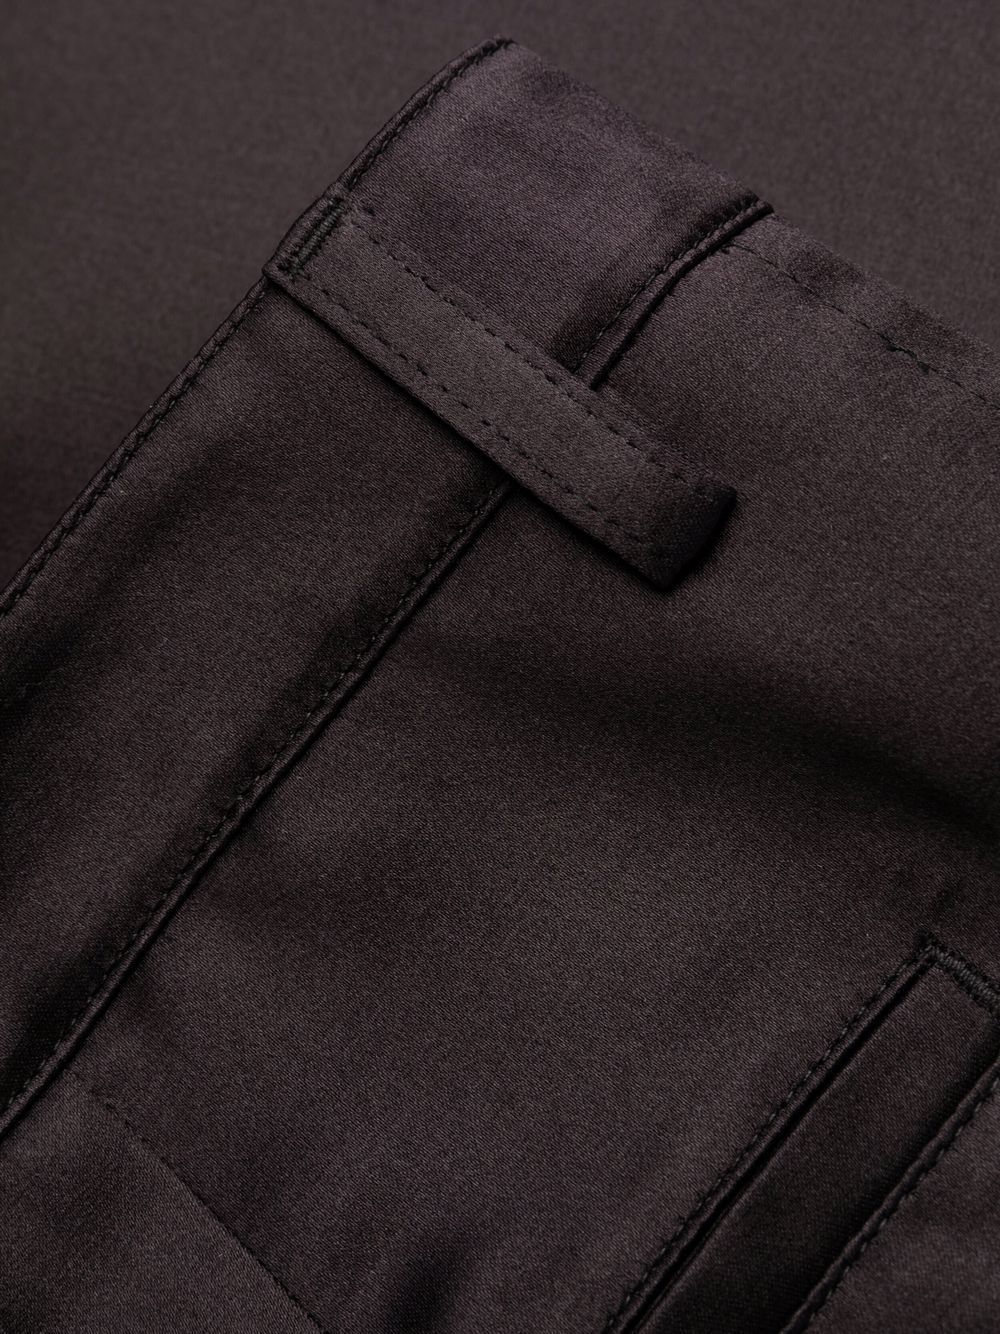 Pantaloni sartoriali neri in misto seta/lana e seta con dettaglio a pieghe